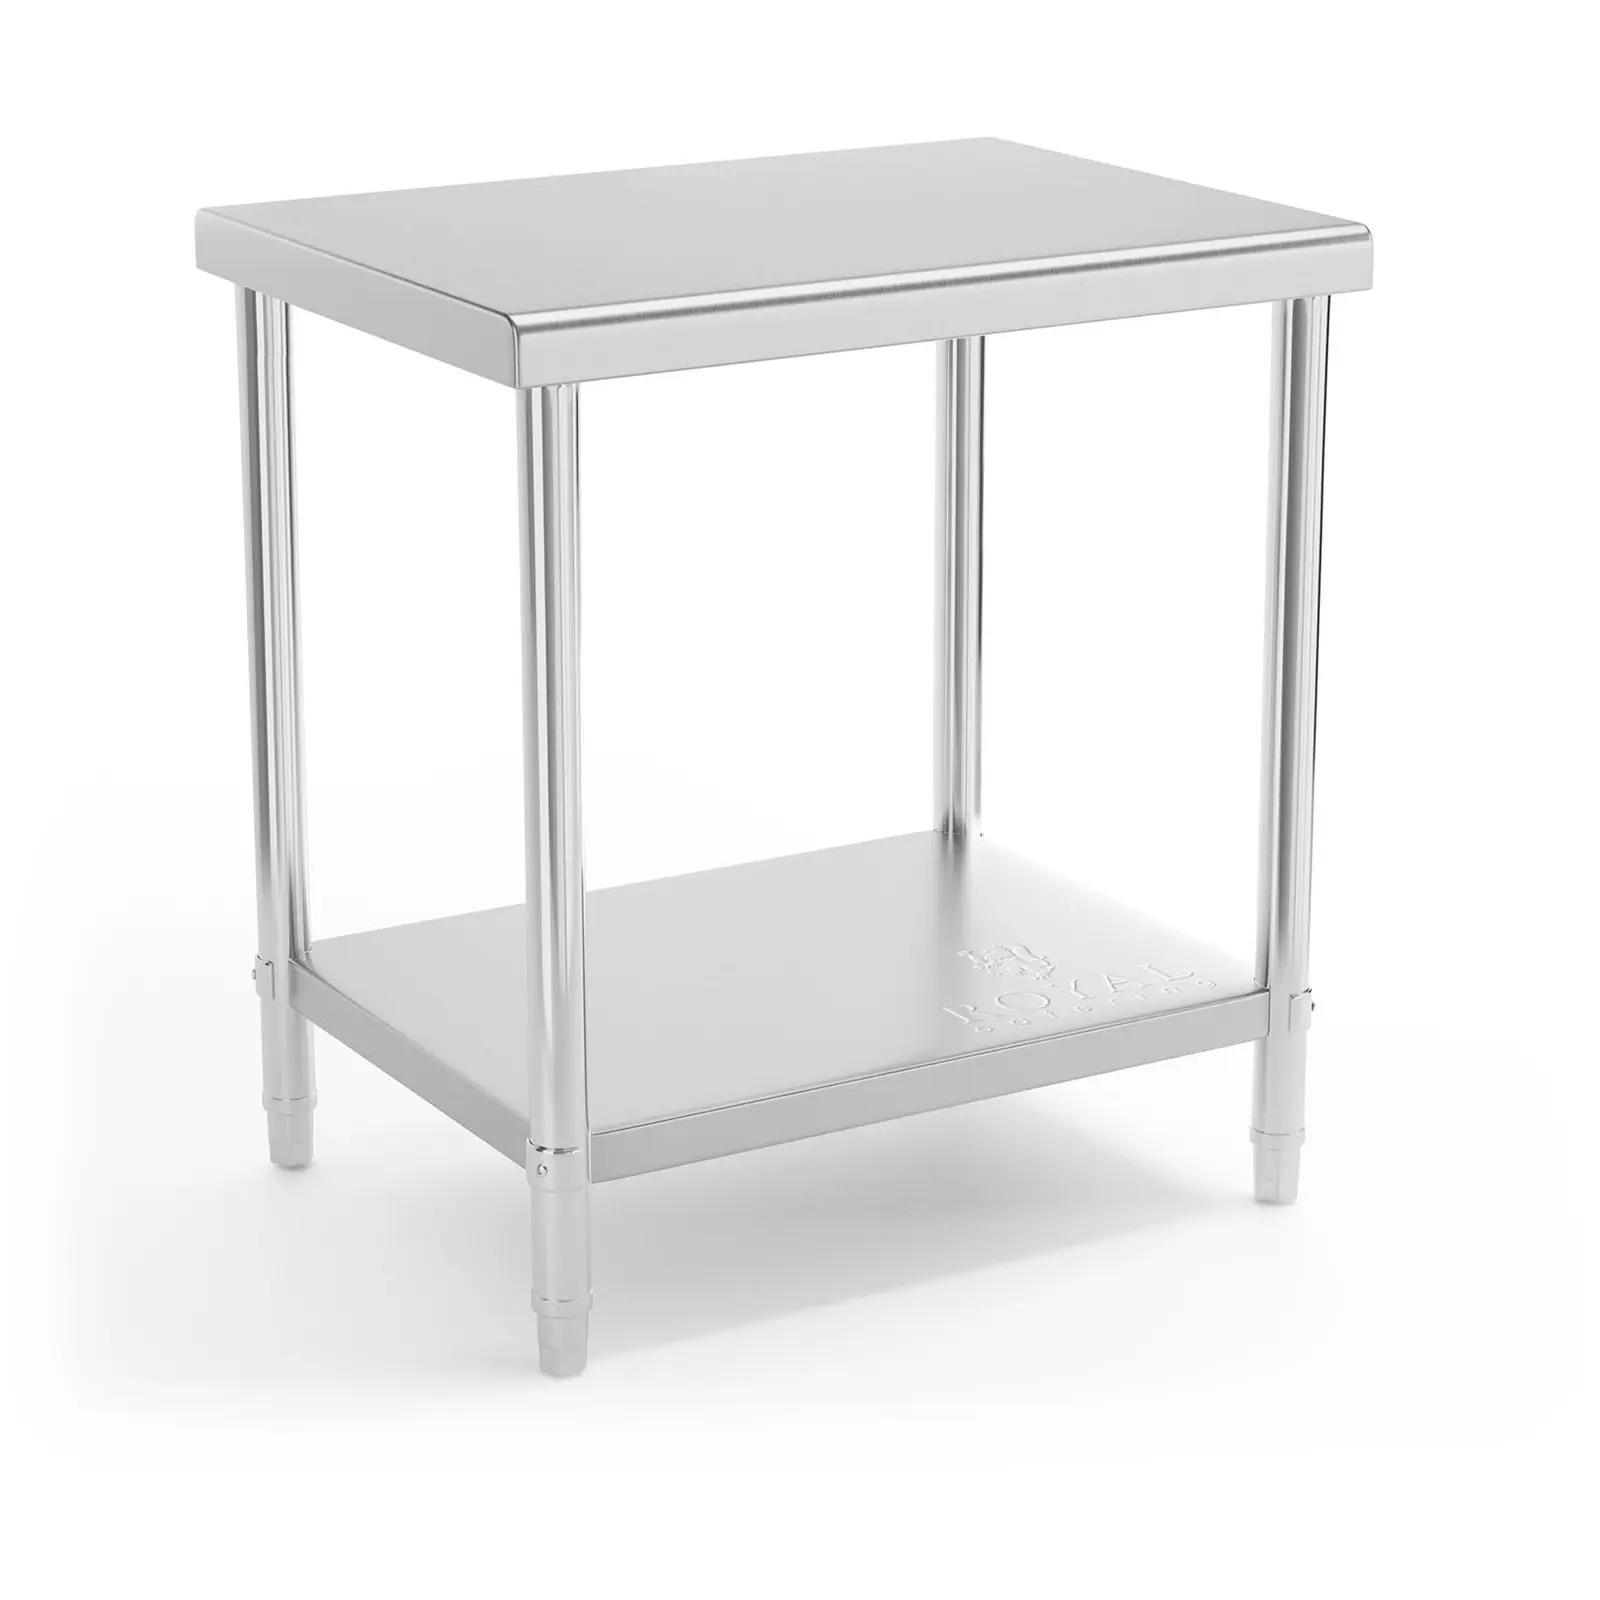 Rozsdamentes acél asztal - 80 x 60 cm - 190 kg terhelhetőség